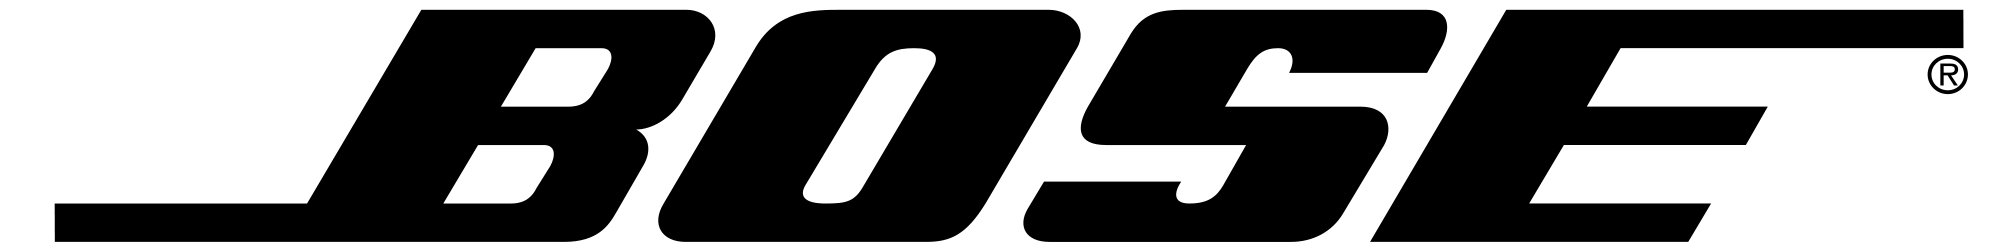 Logo Bose